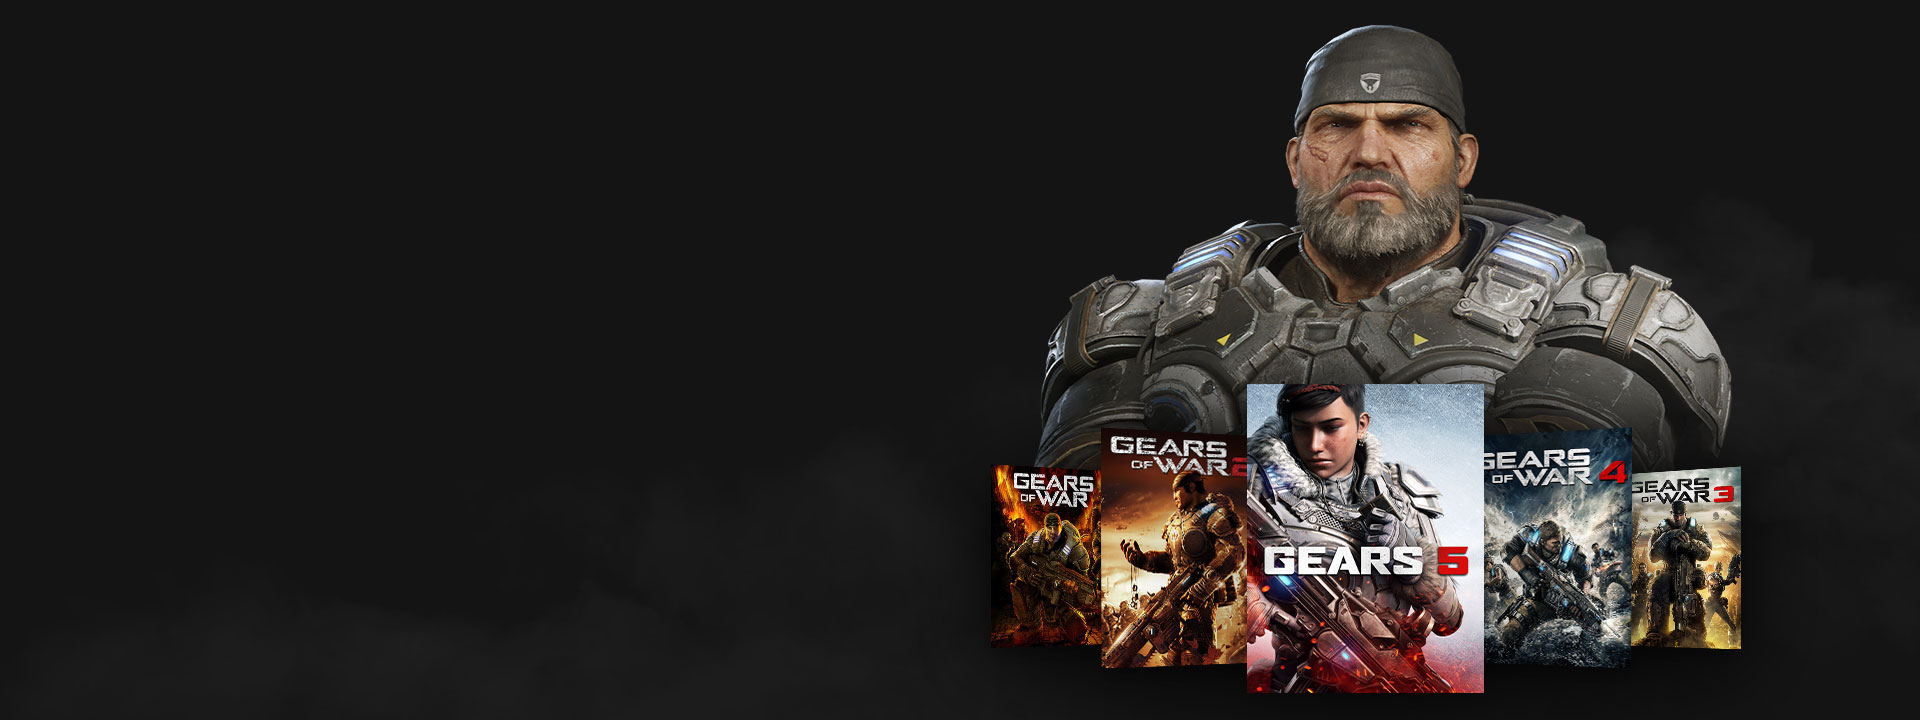 Xbox Game Pass-logo, Marcus poseert met de Gears of War-games.